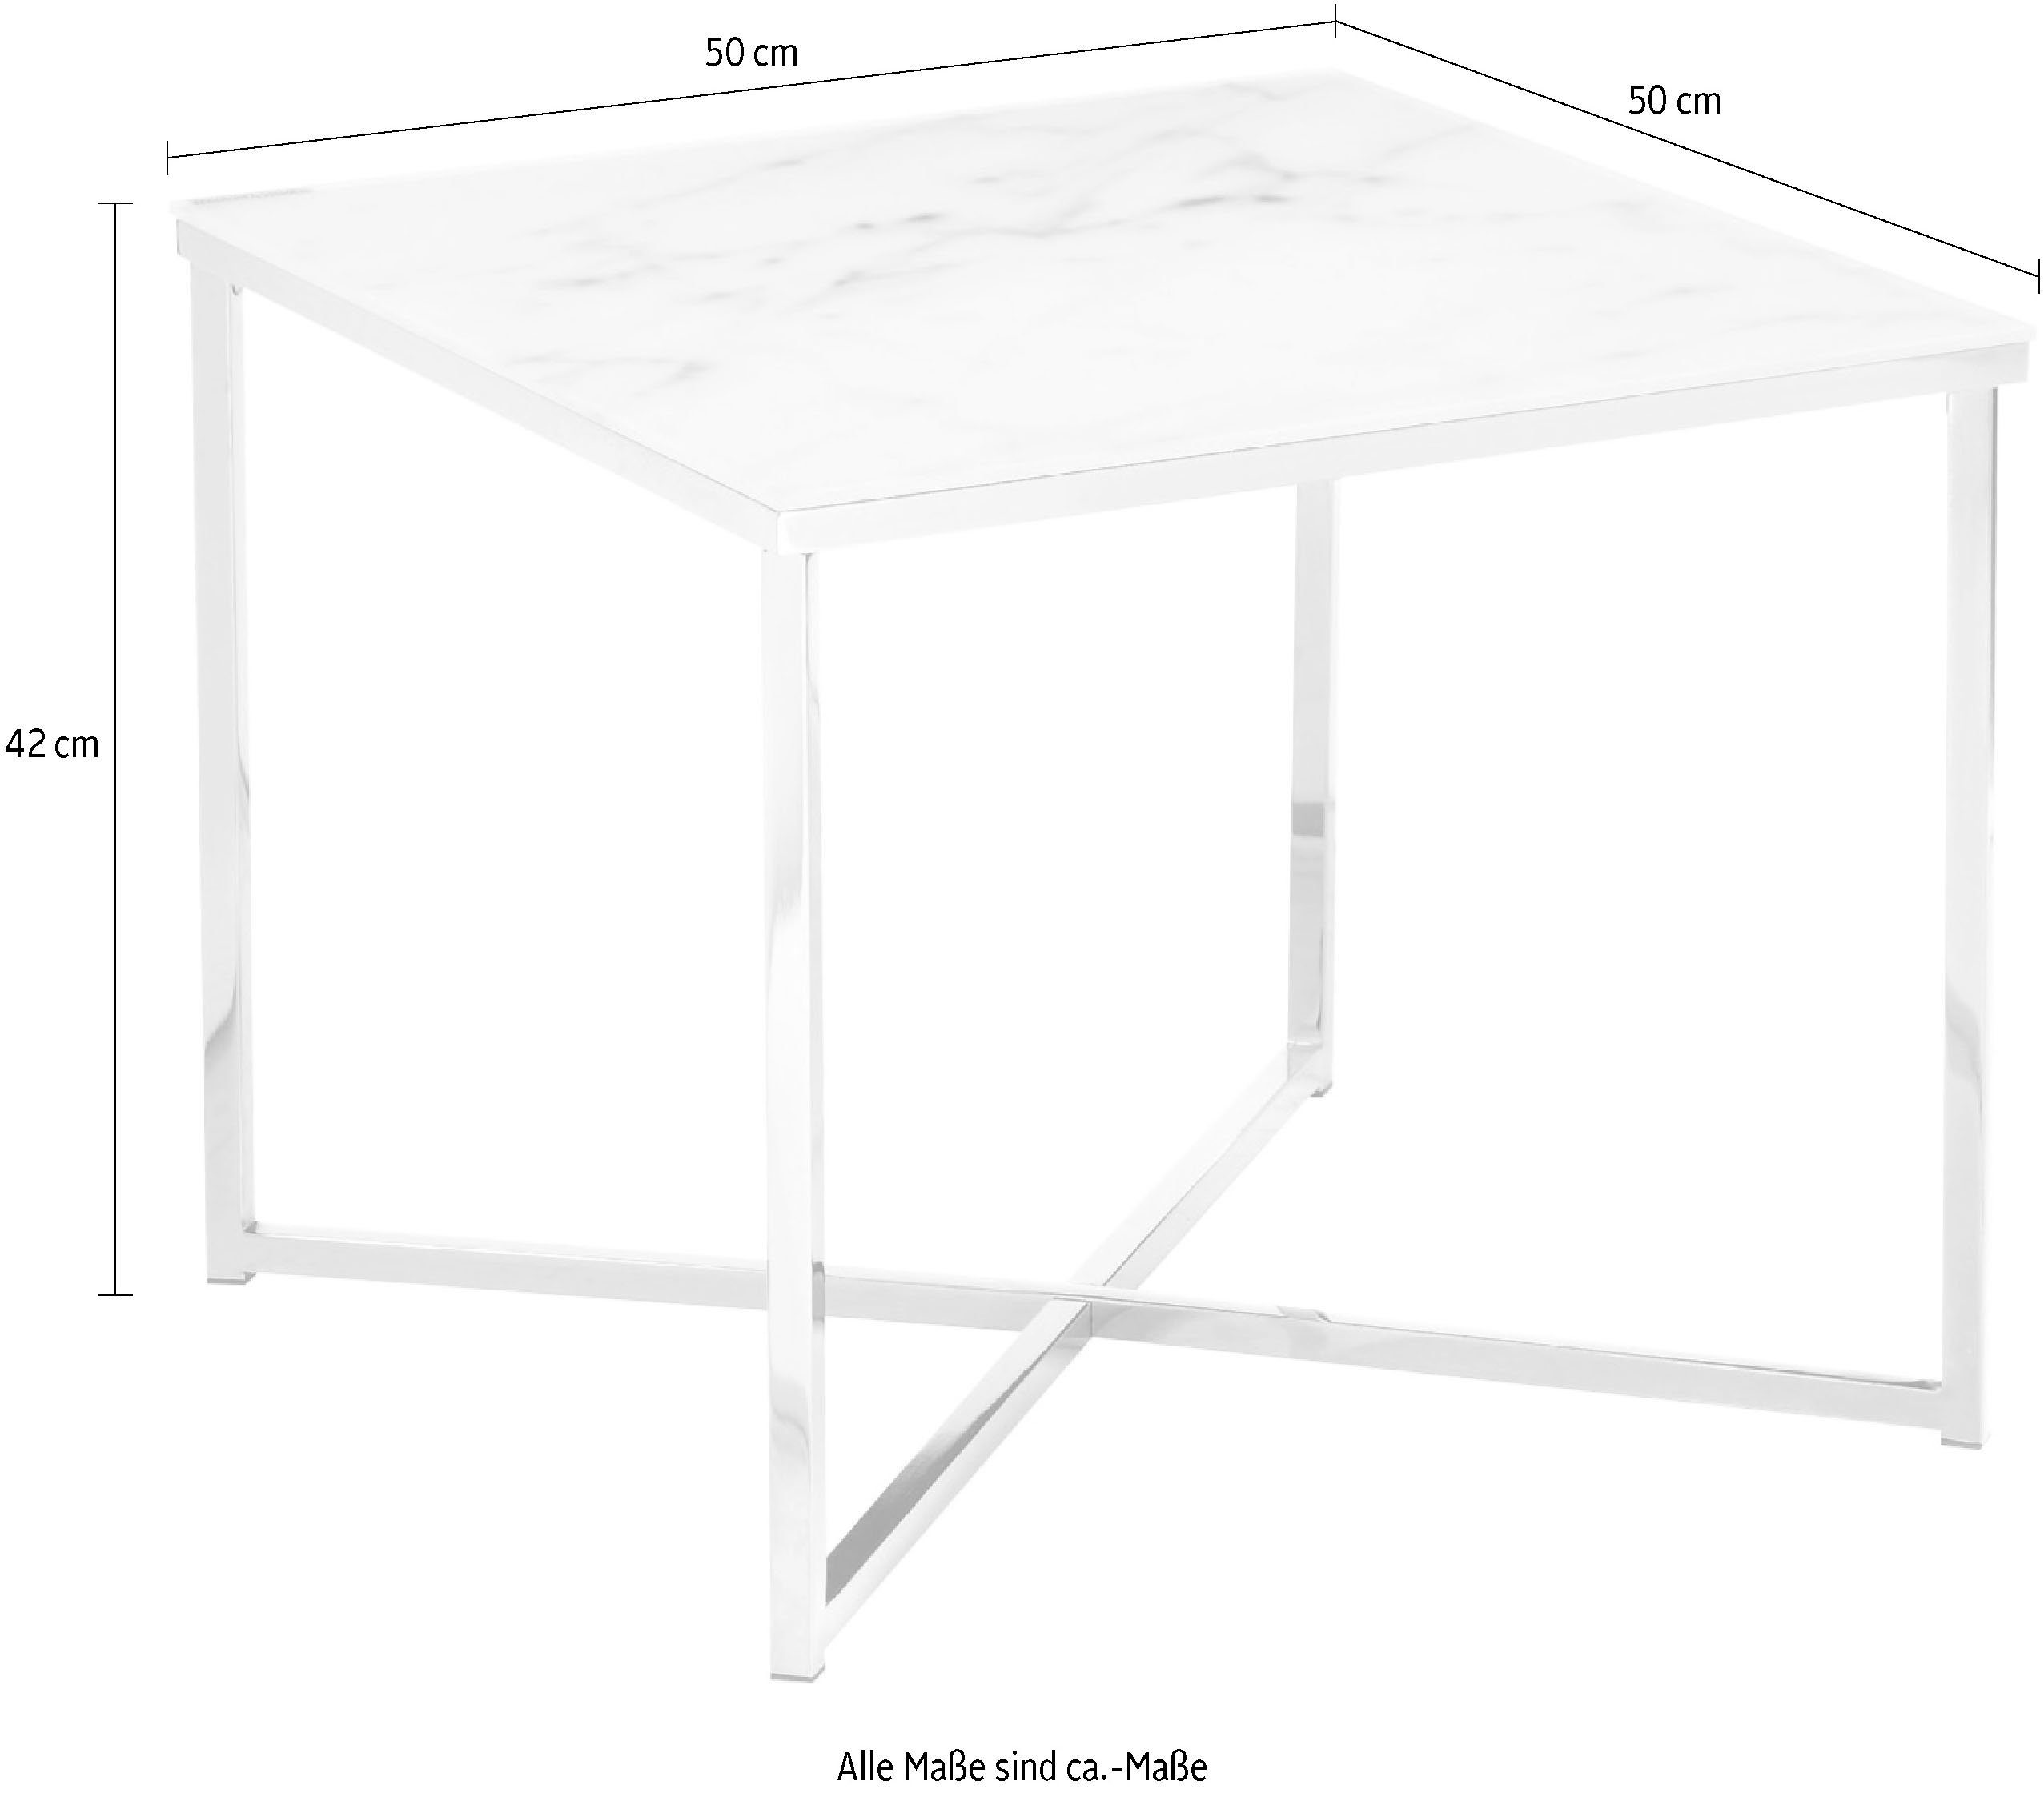 Weiß Tischplatte SalesFever | in Weiß/Chromfarben Beistelltisch, | Chromfarben Marmoroptik